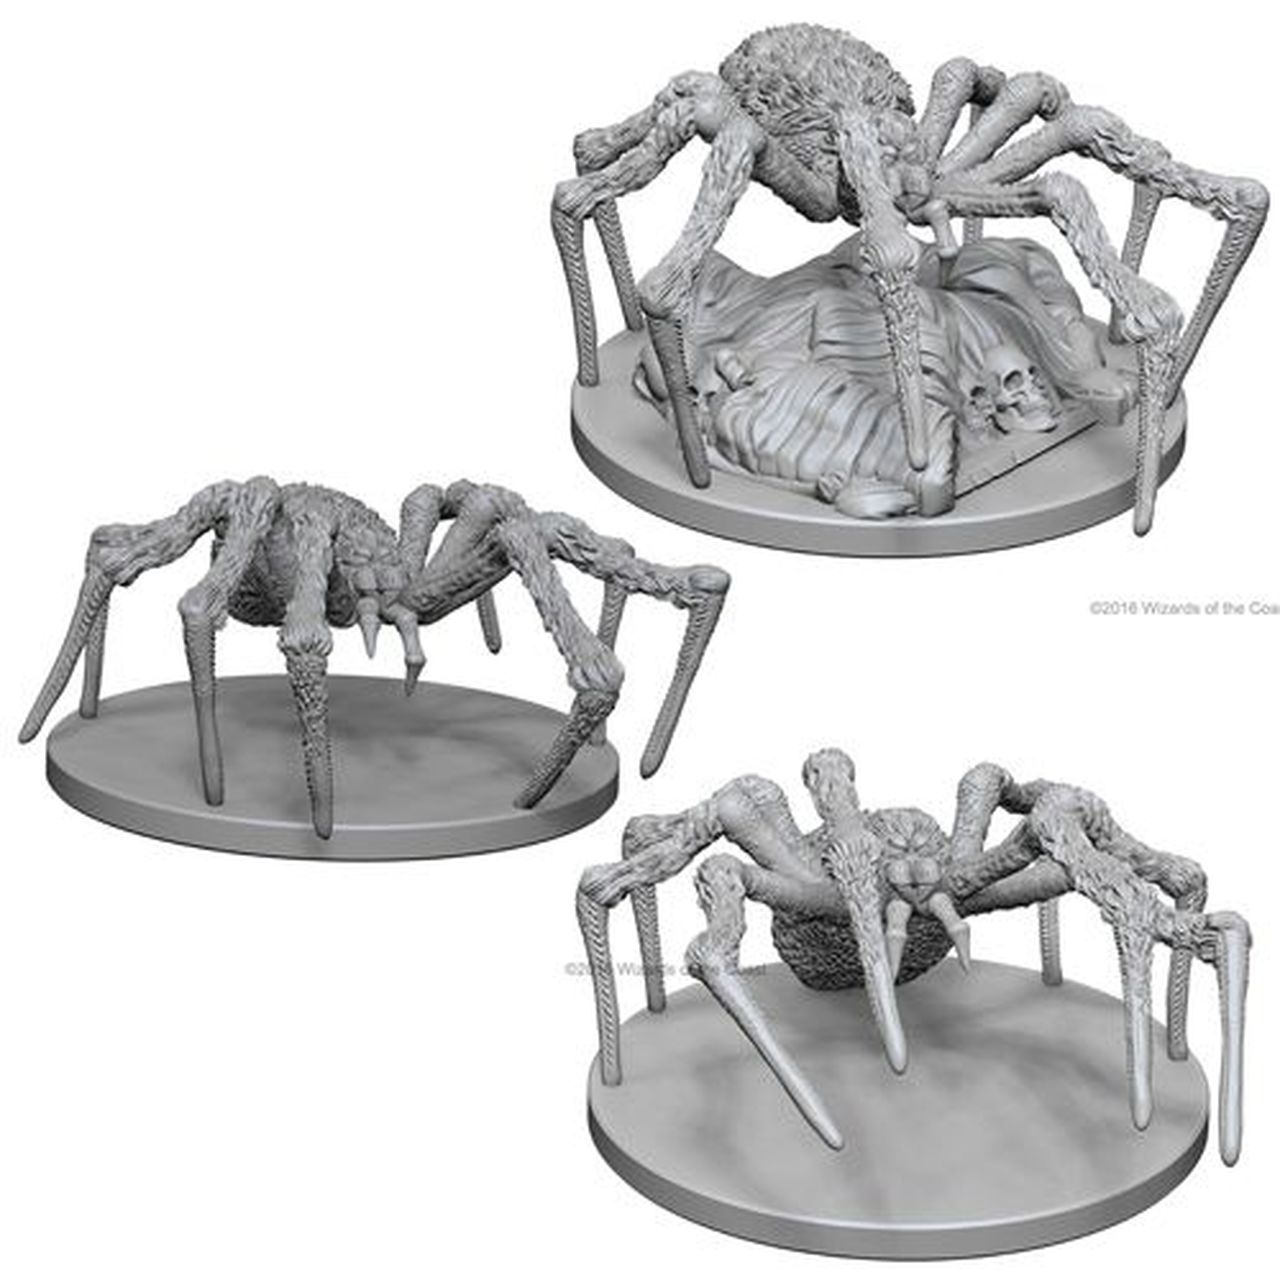 Miniaturas D&D Spiders